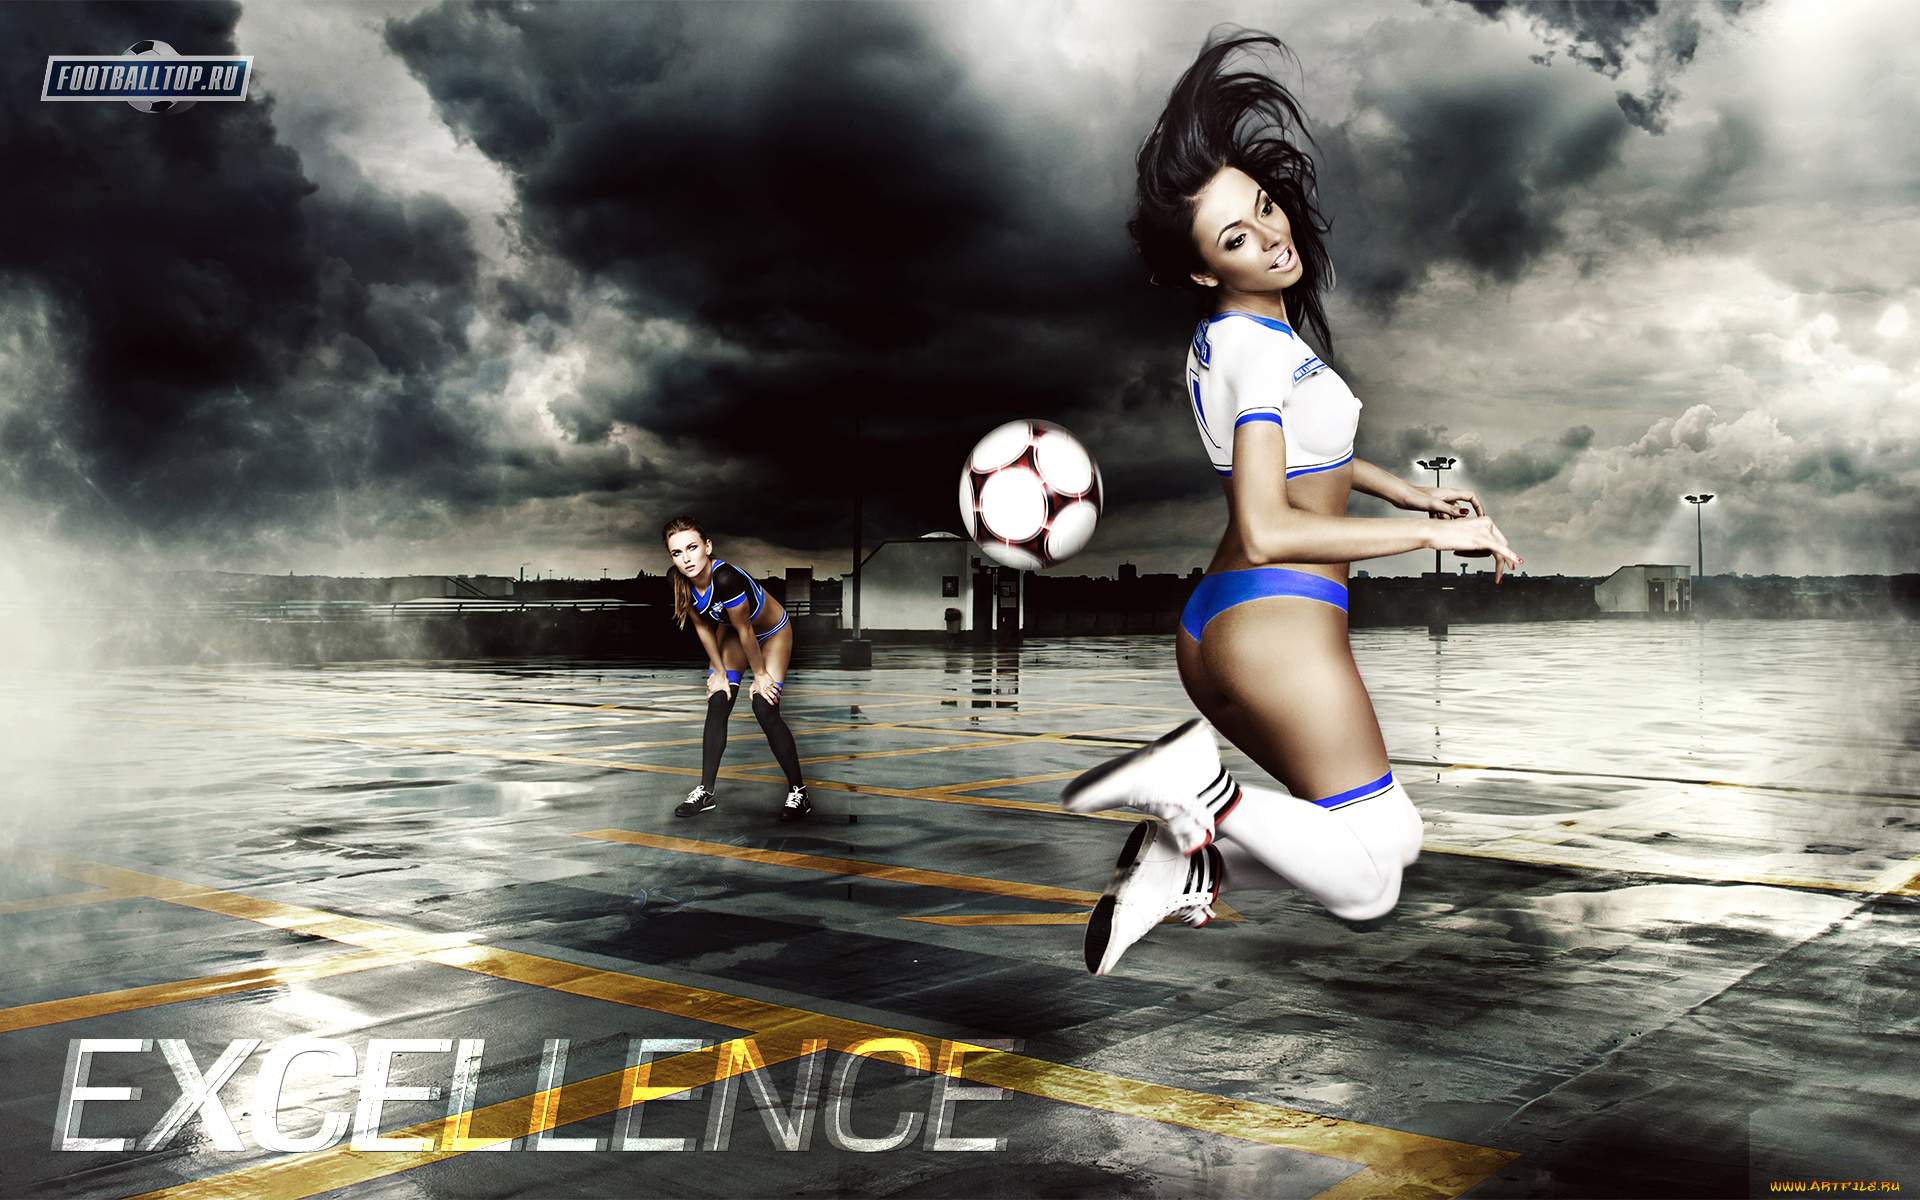 football, excellence, спорт, футбол, девушка